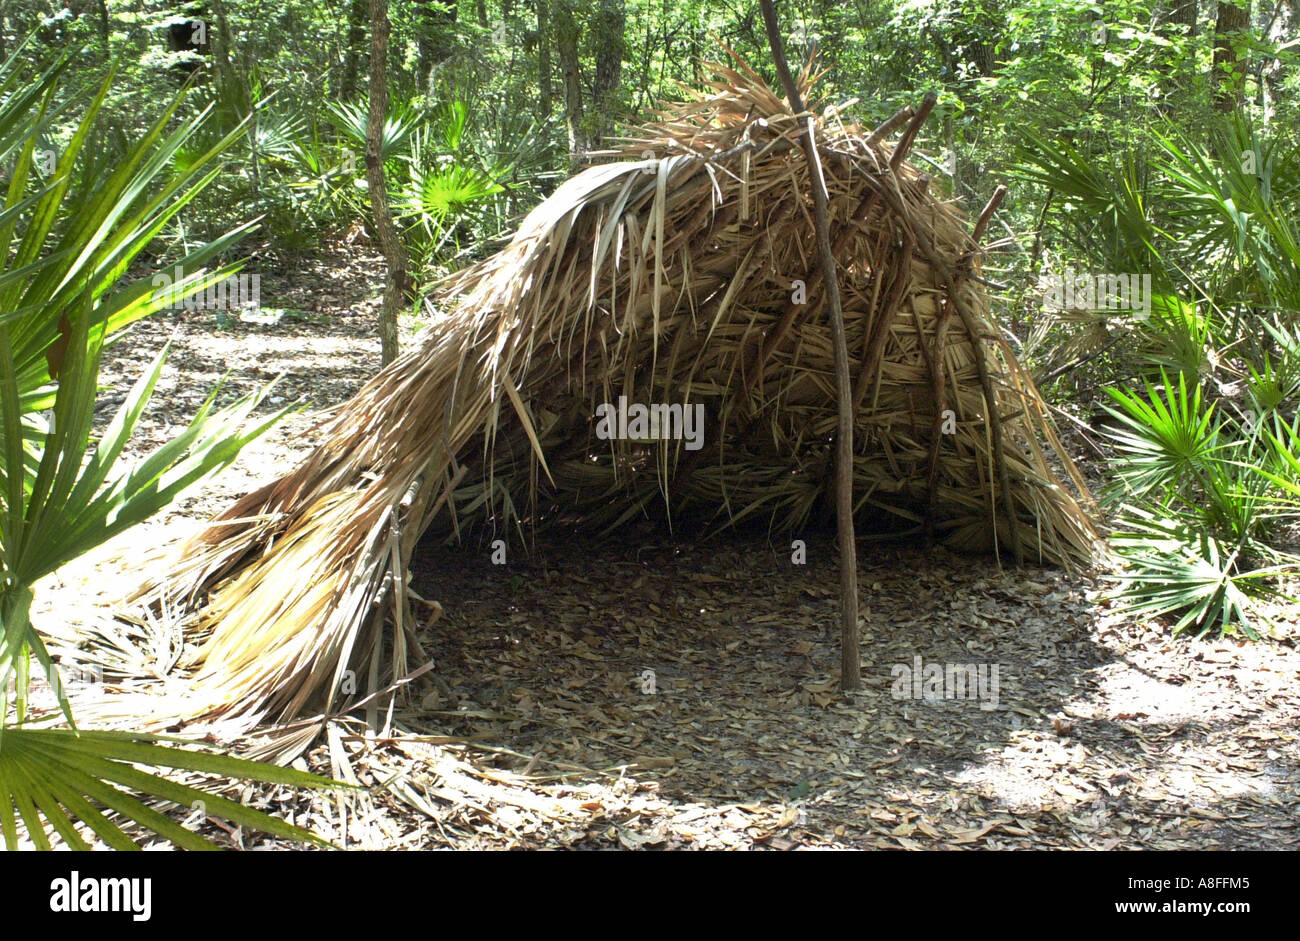 Ricostruito Timucuan nativo rifugio di fronde di palma a Fort Caroline National Historic Site sulla St Johns River Florida. Fotografia digitale Foto Stock